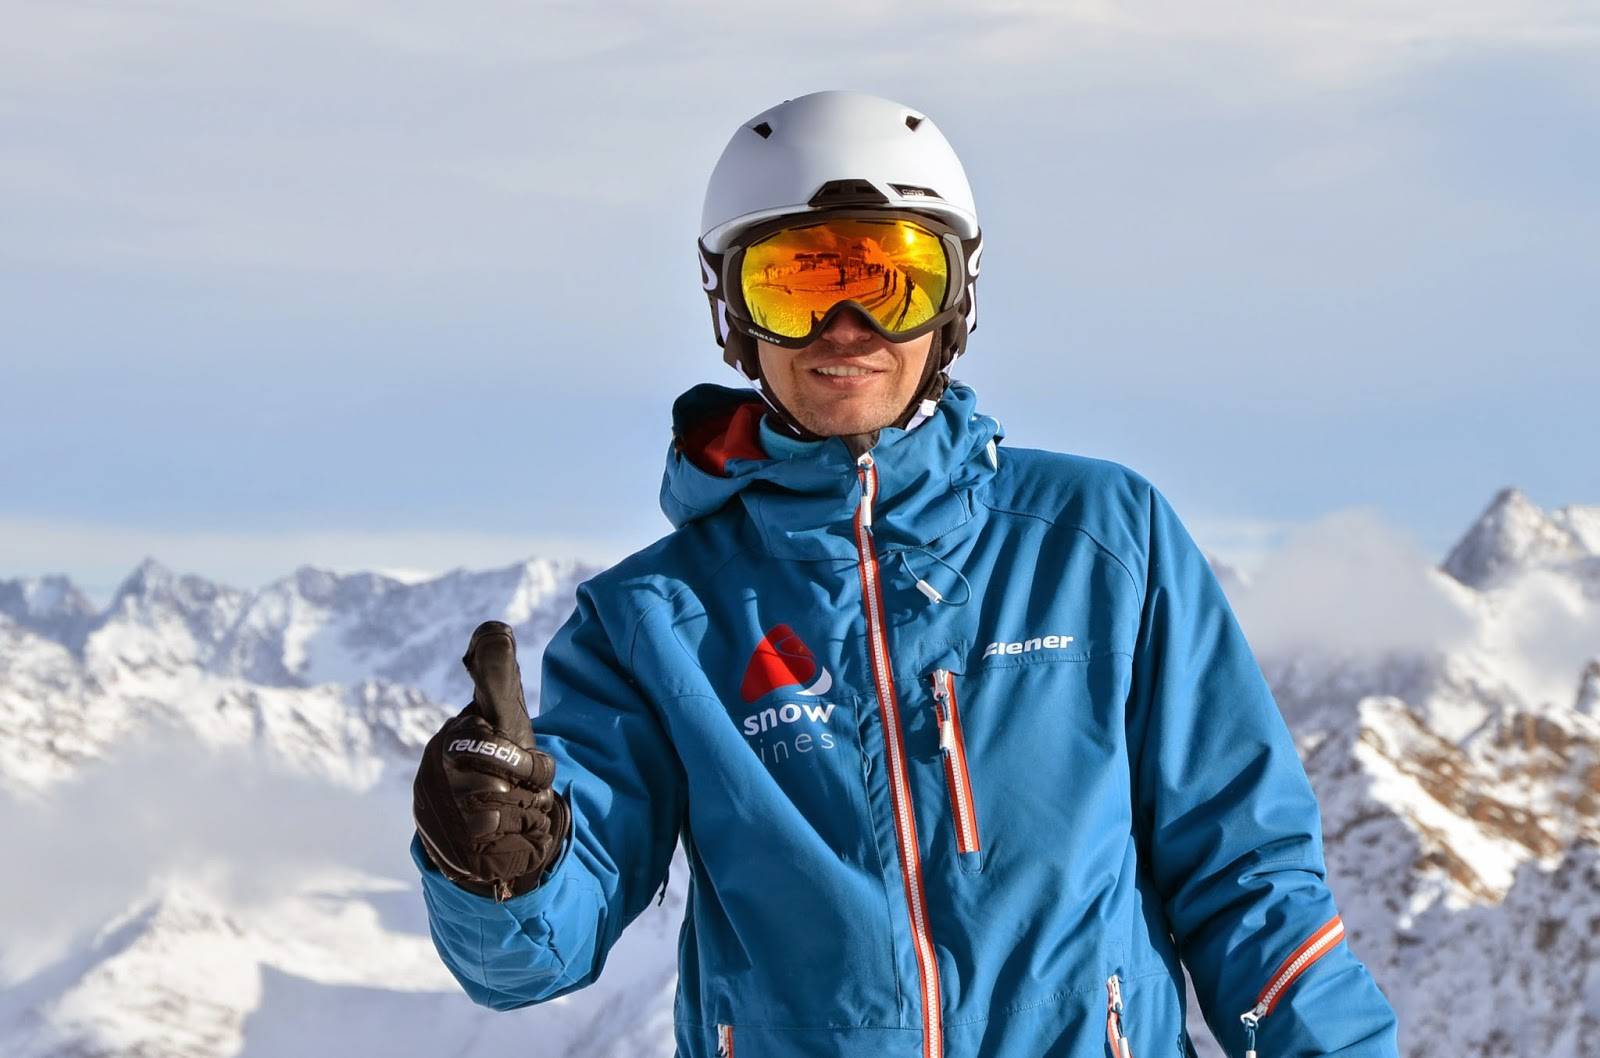 Виды и стили катания на горных лыжах